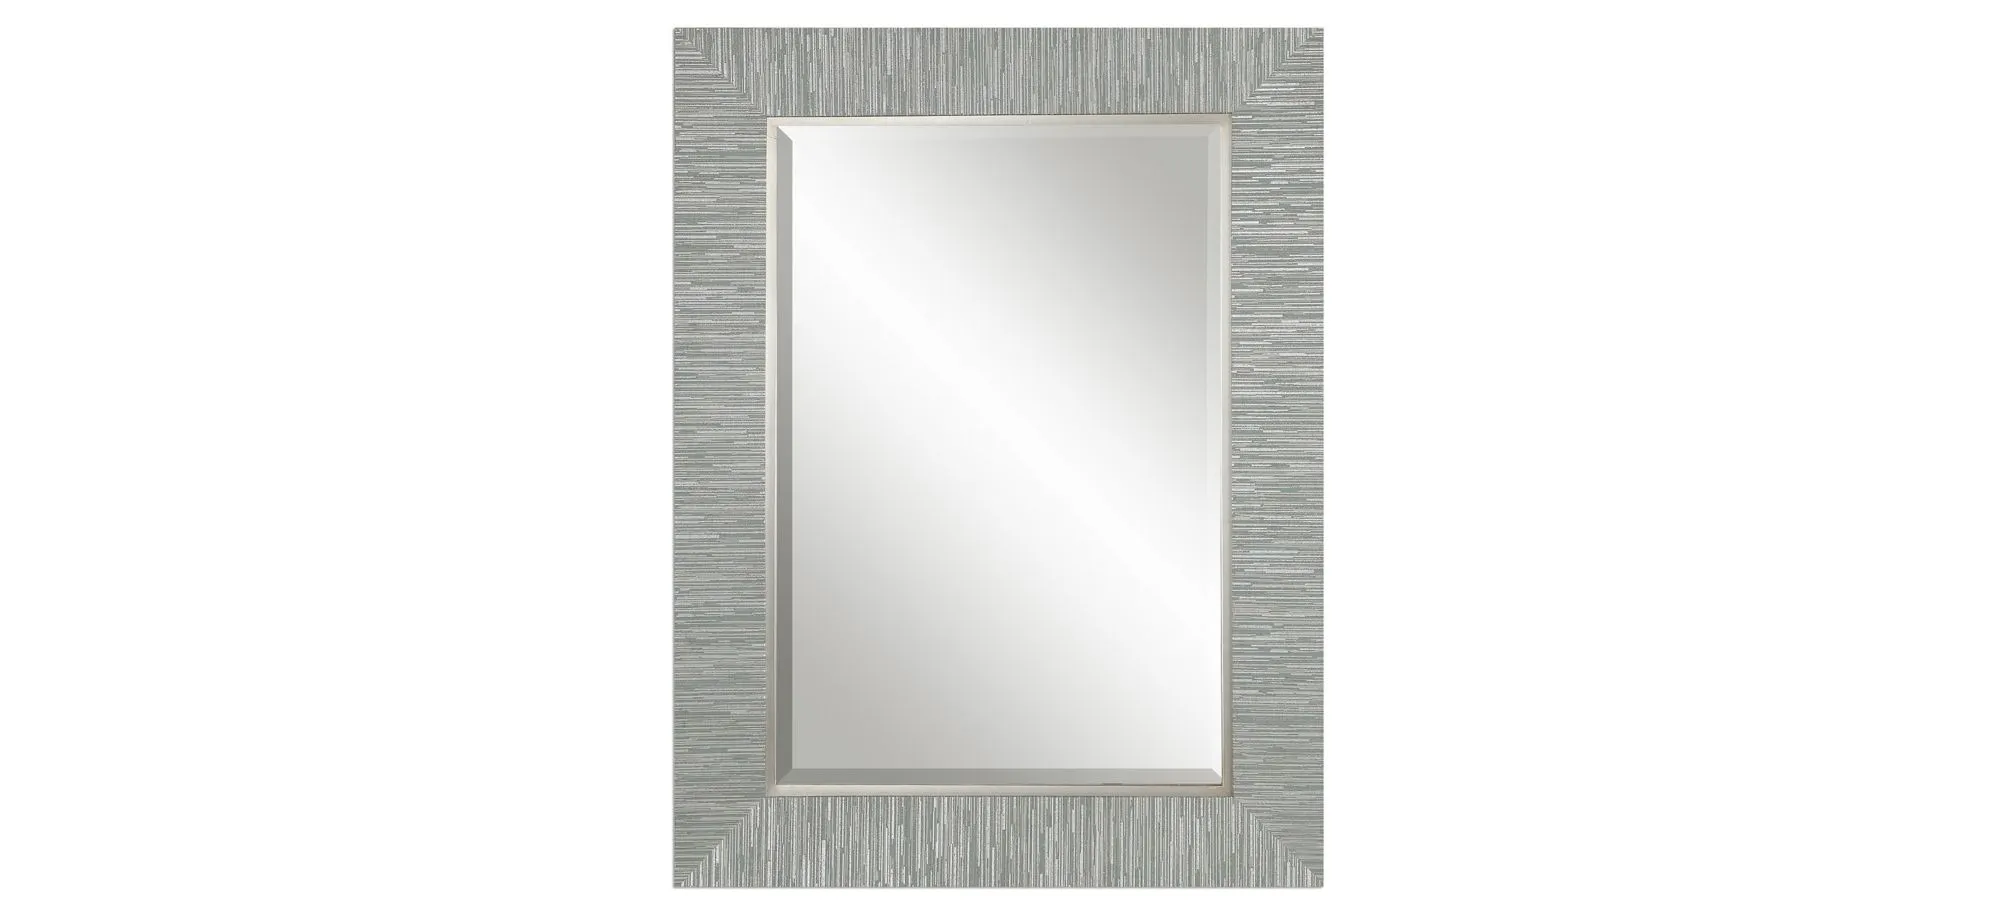 Belaya Gray Wood Wall Mirror in Blue-gray / Silver by Uttermost